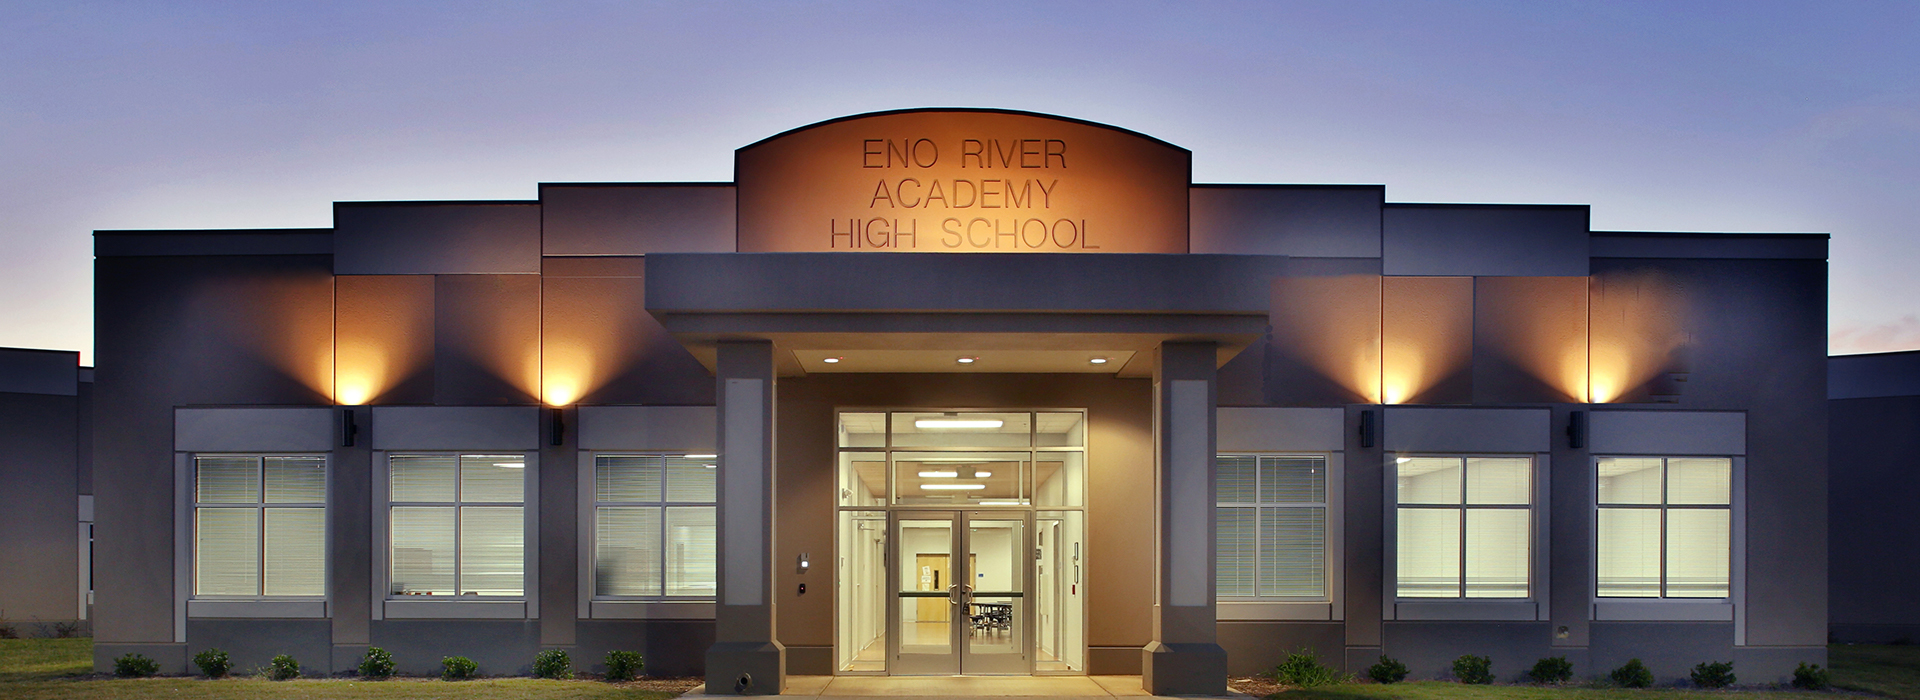 Eno River High School Campus